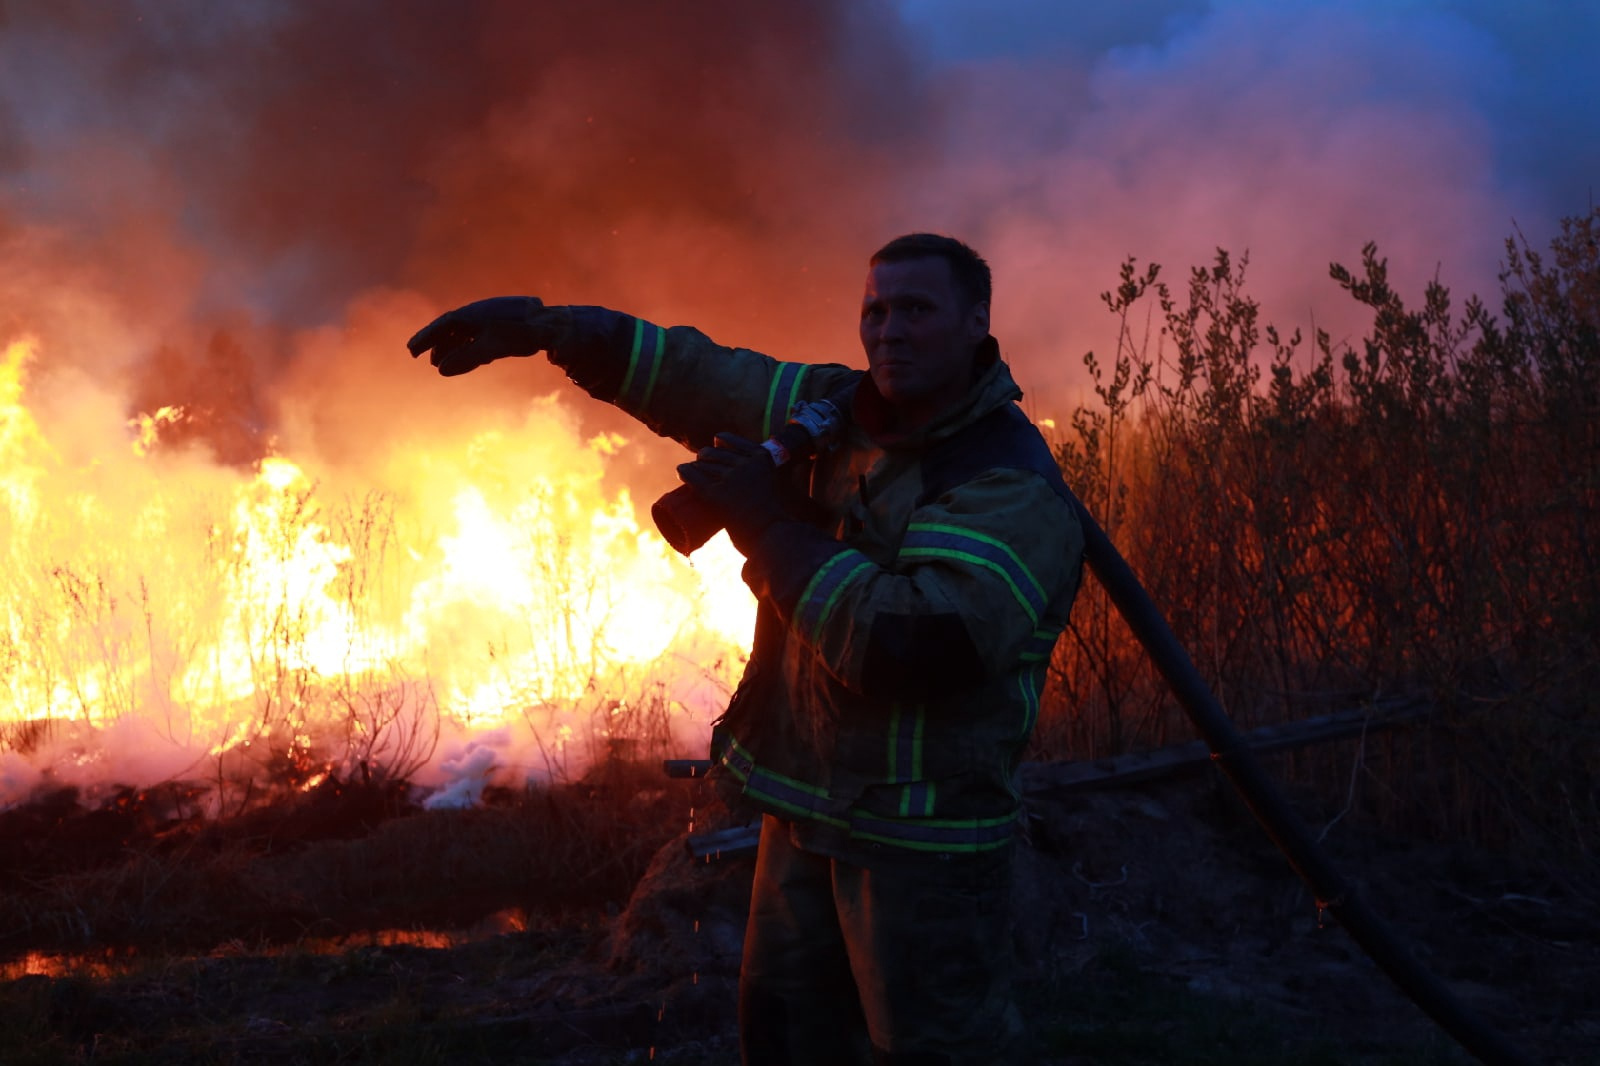 Фотограф Максим Слуцкий побывал в эпицентре пожара и показал нелегкую работу сотрудников МЧС